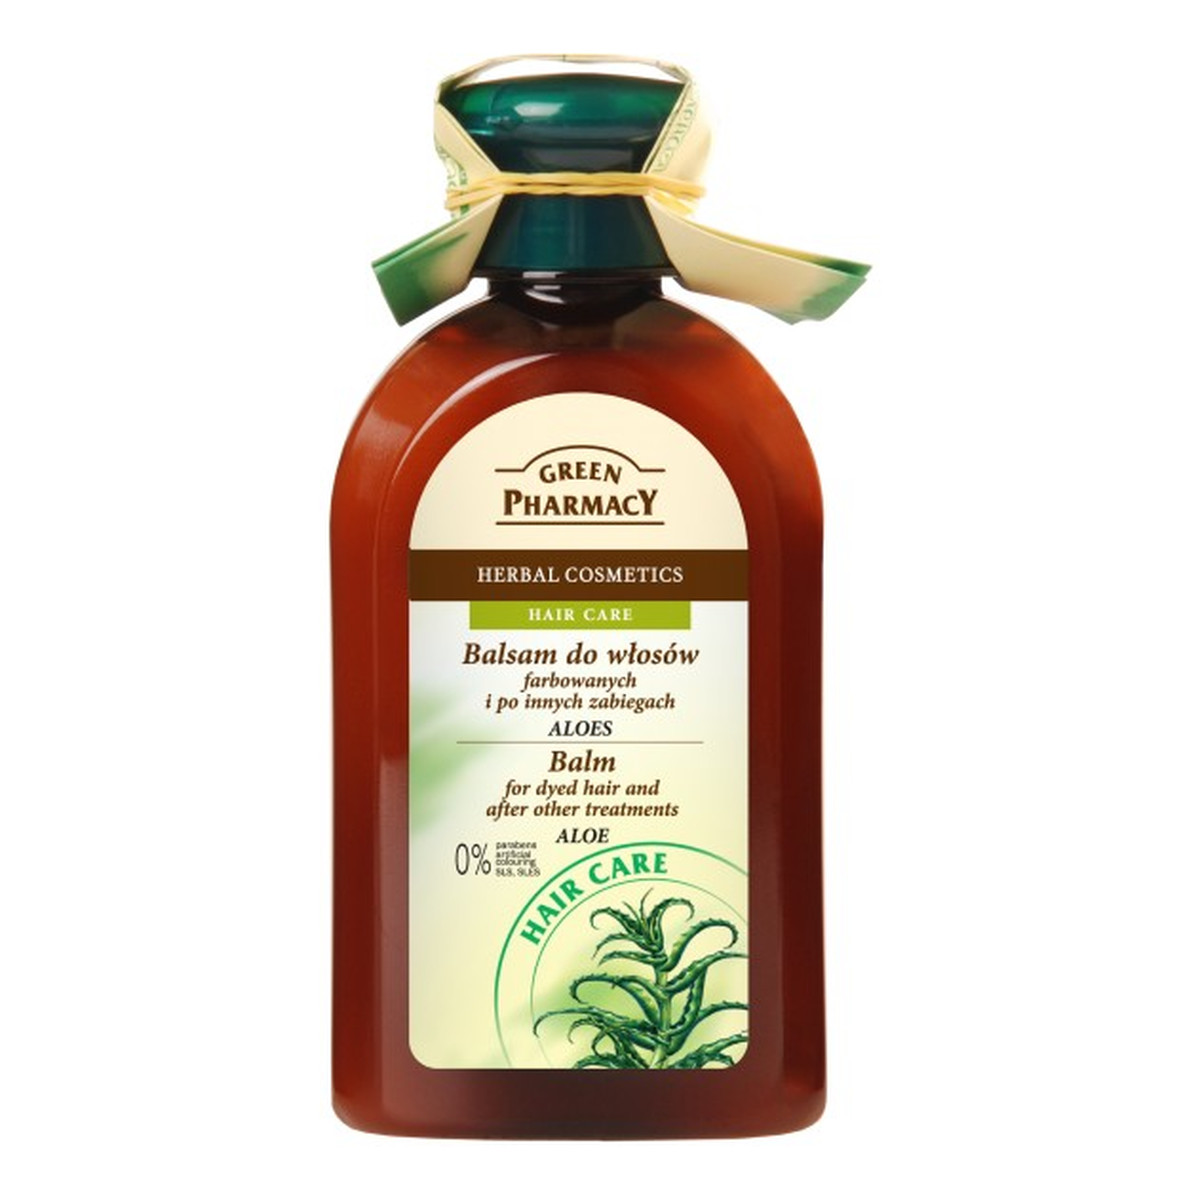 Green Pharmacy Herbal Cosmetics Hair Care Balsam Do Włosów Aloes 300ml